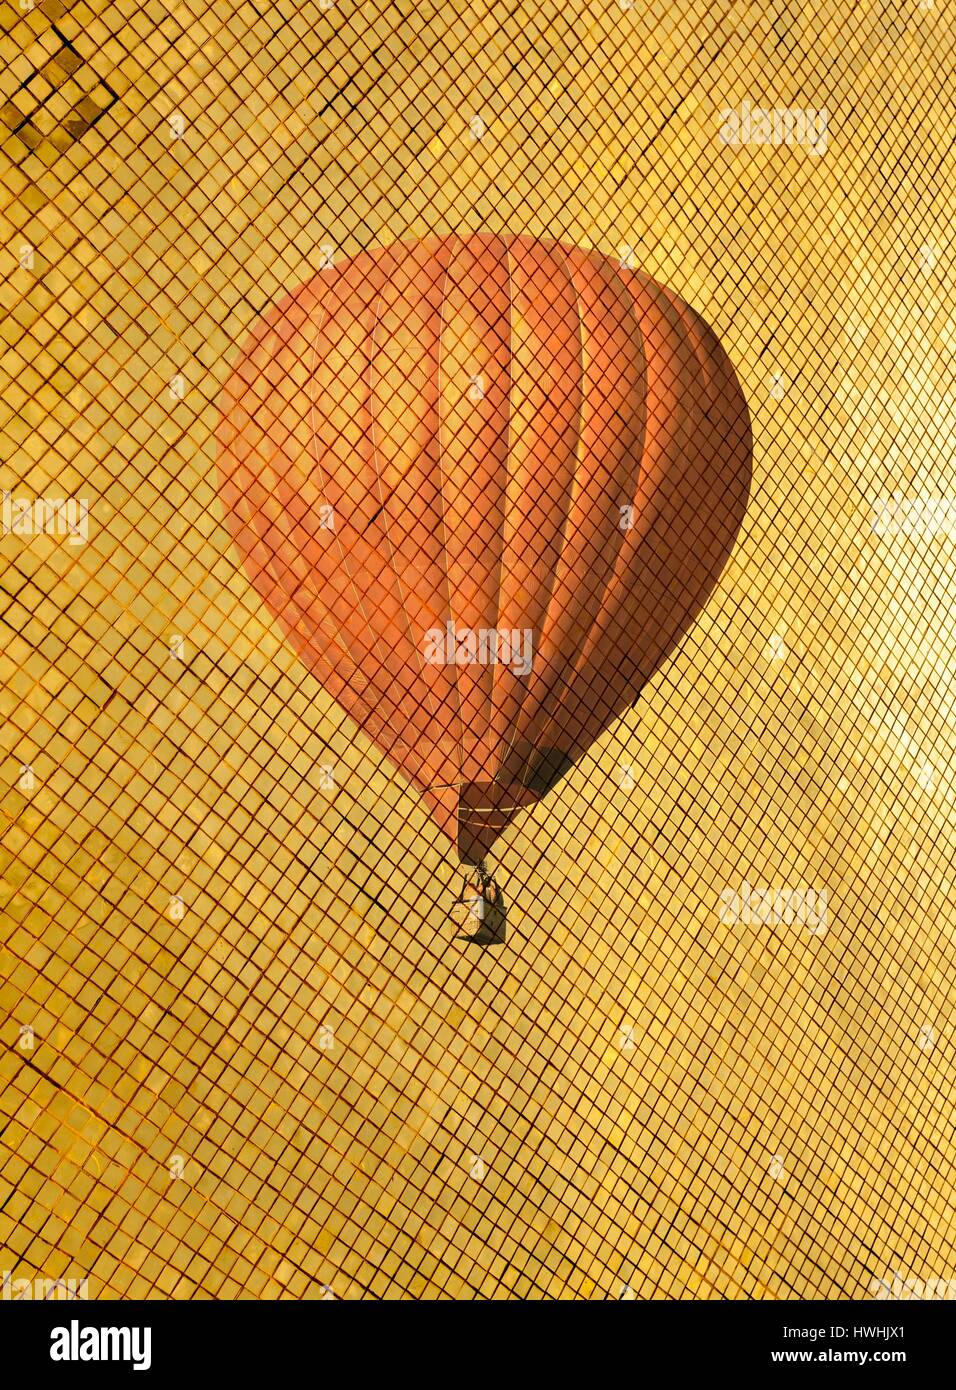 Retro style air balloon Stock Photo